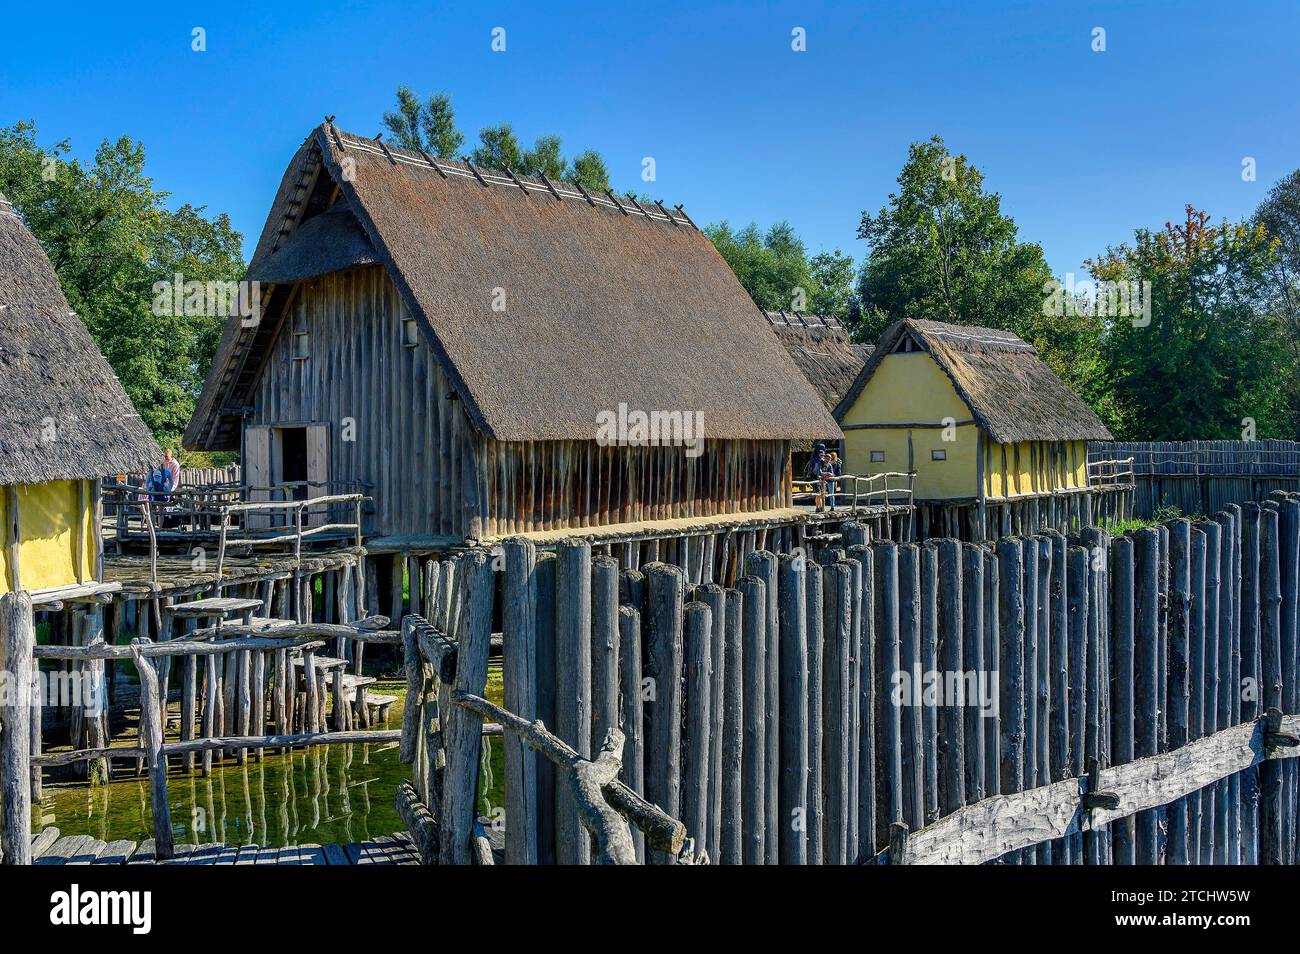 Pfahlbauten am Bodensee, eine Touristenattraktion der Region und das älteste archäologische Freilichtmuseum Deutschlands Stockfoto